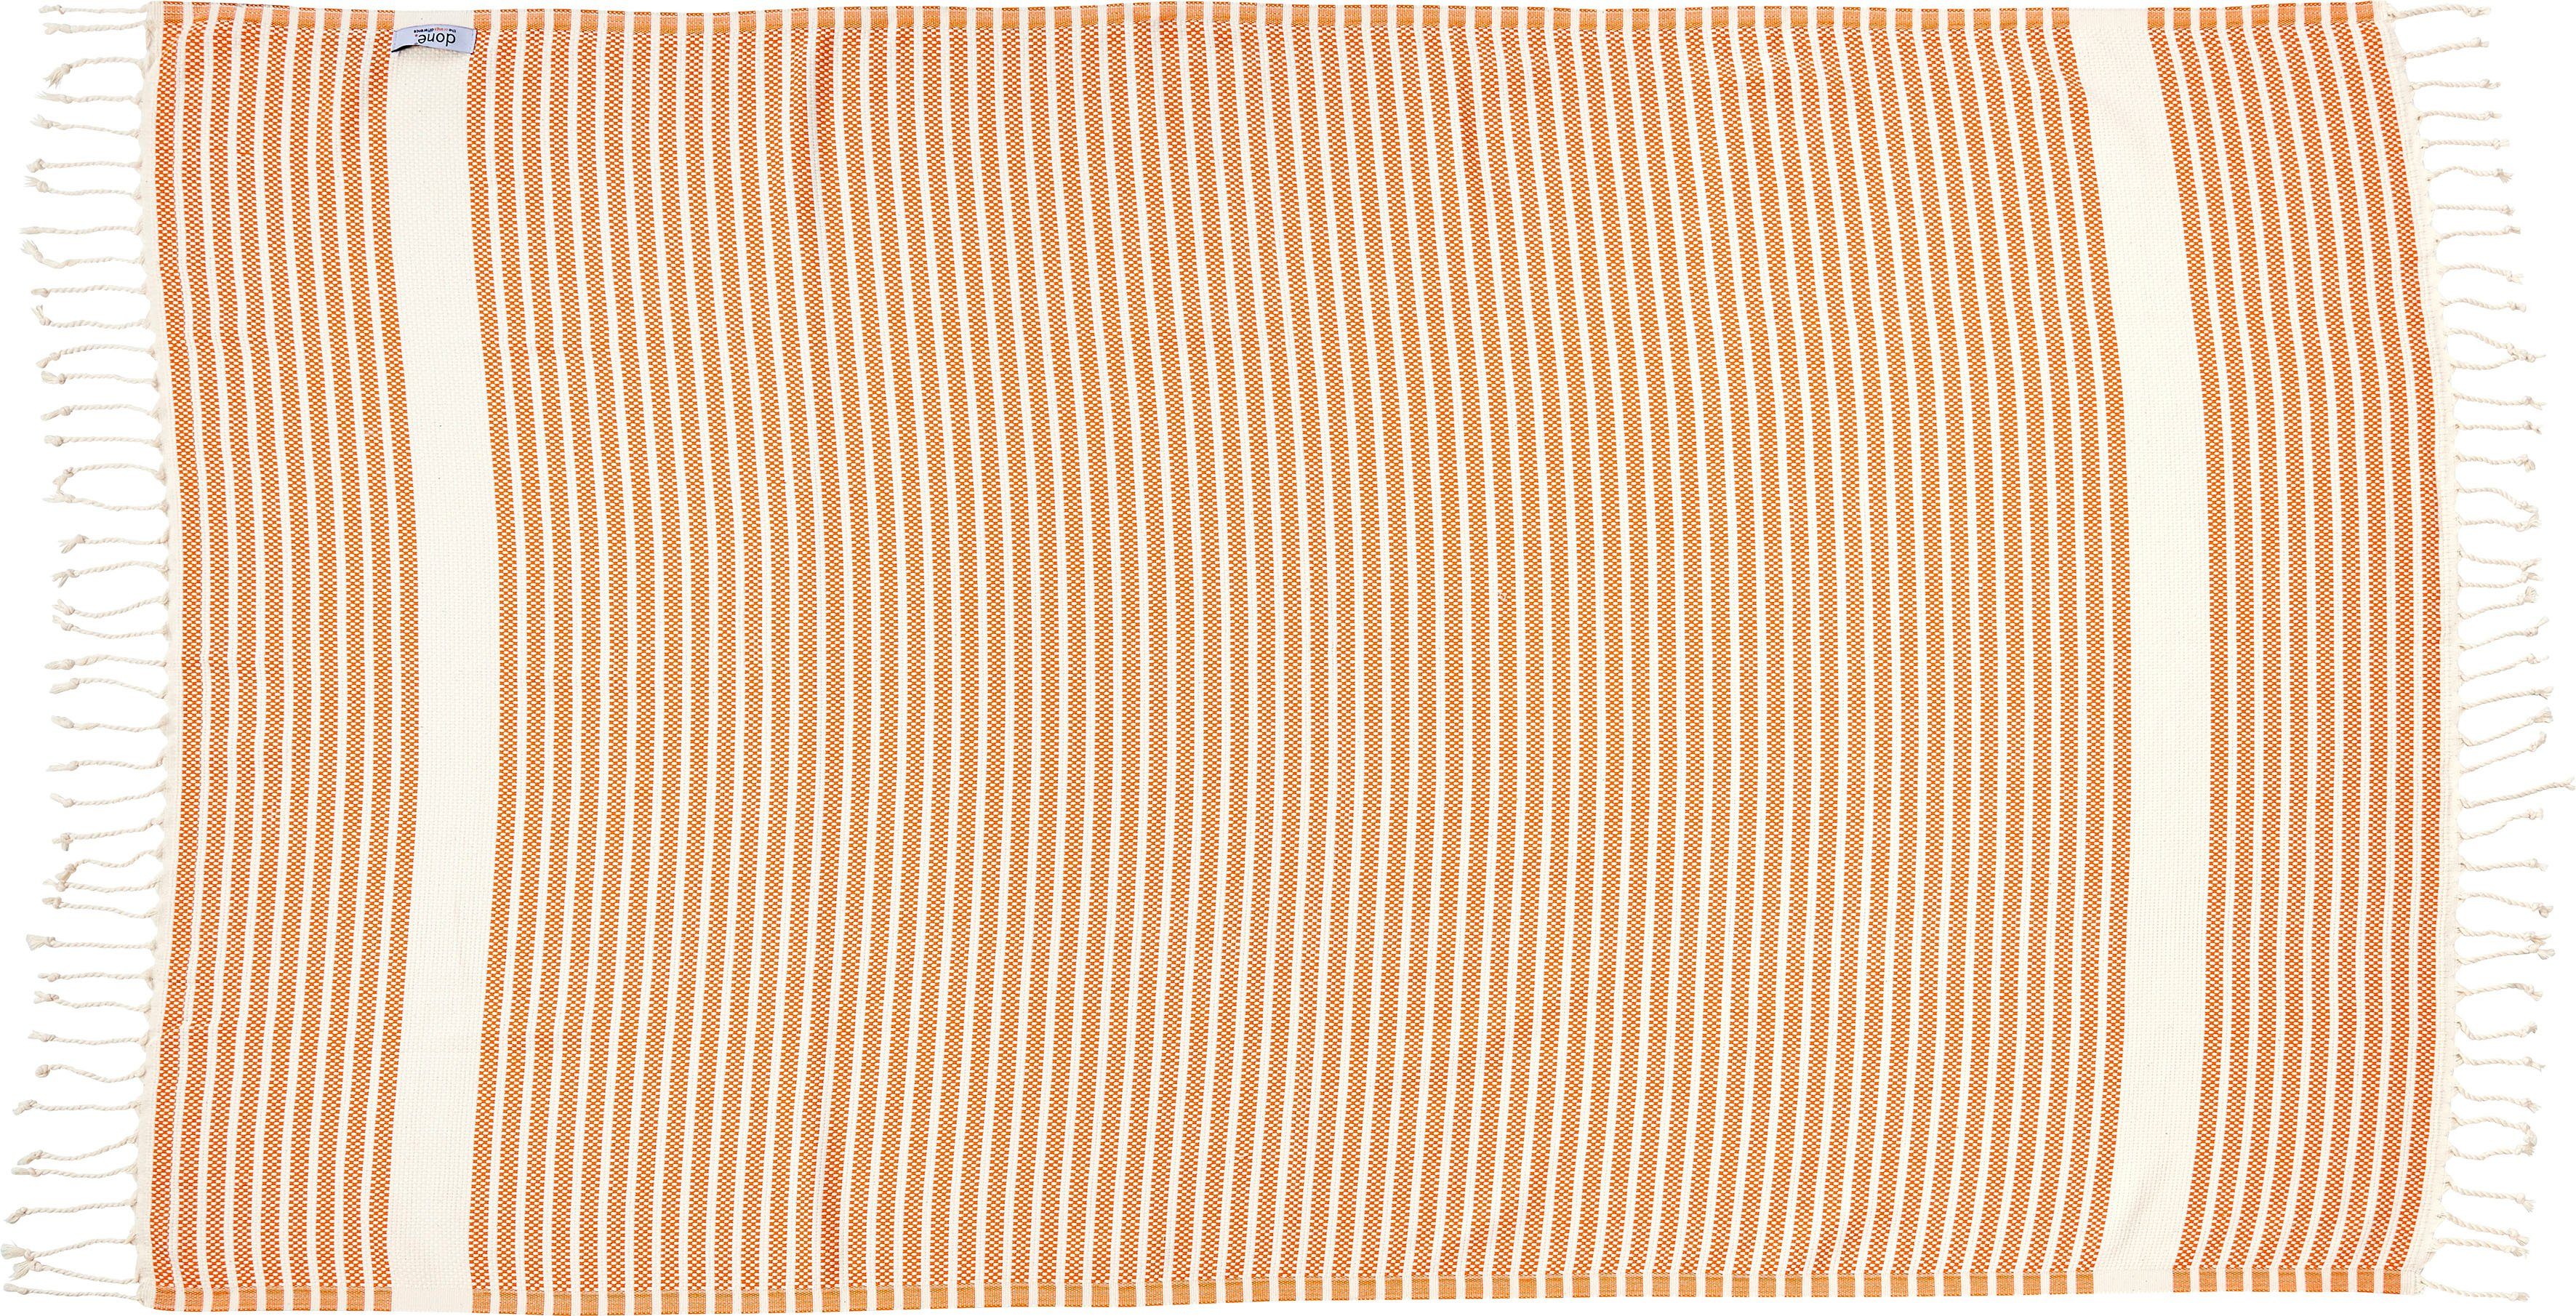 Lounge Plaid Fransen geknoteten orange/beige Plaid Stripes, mit done.®, Leichtes